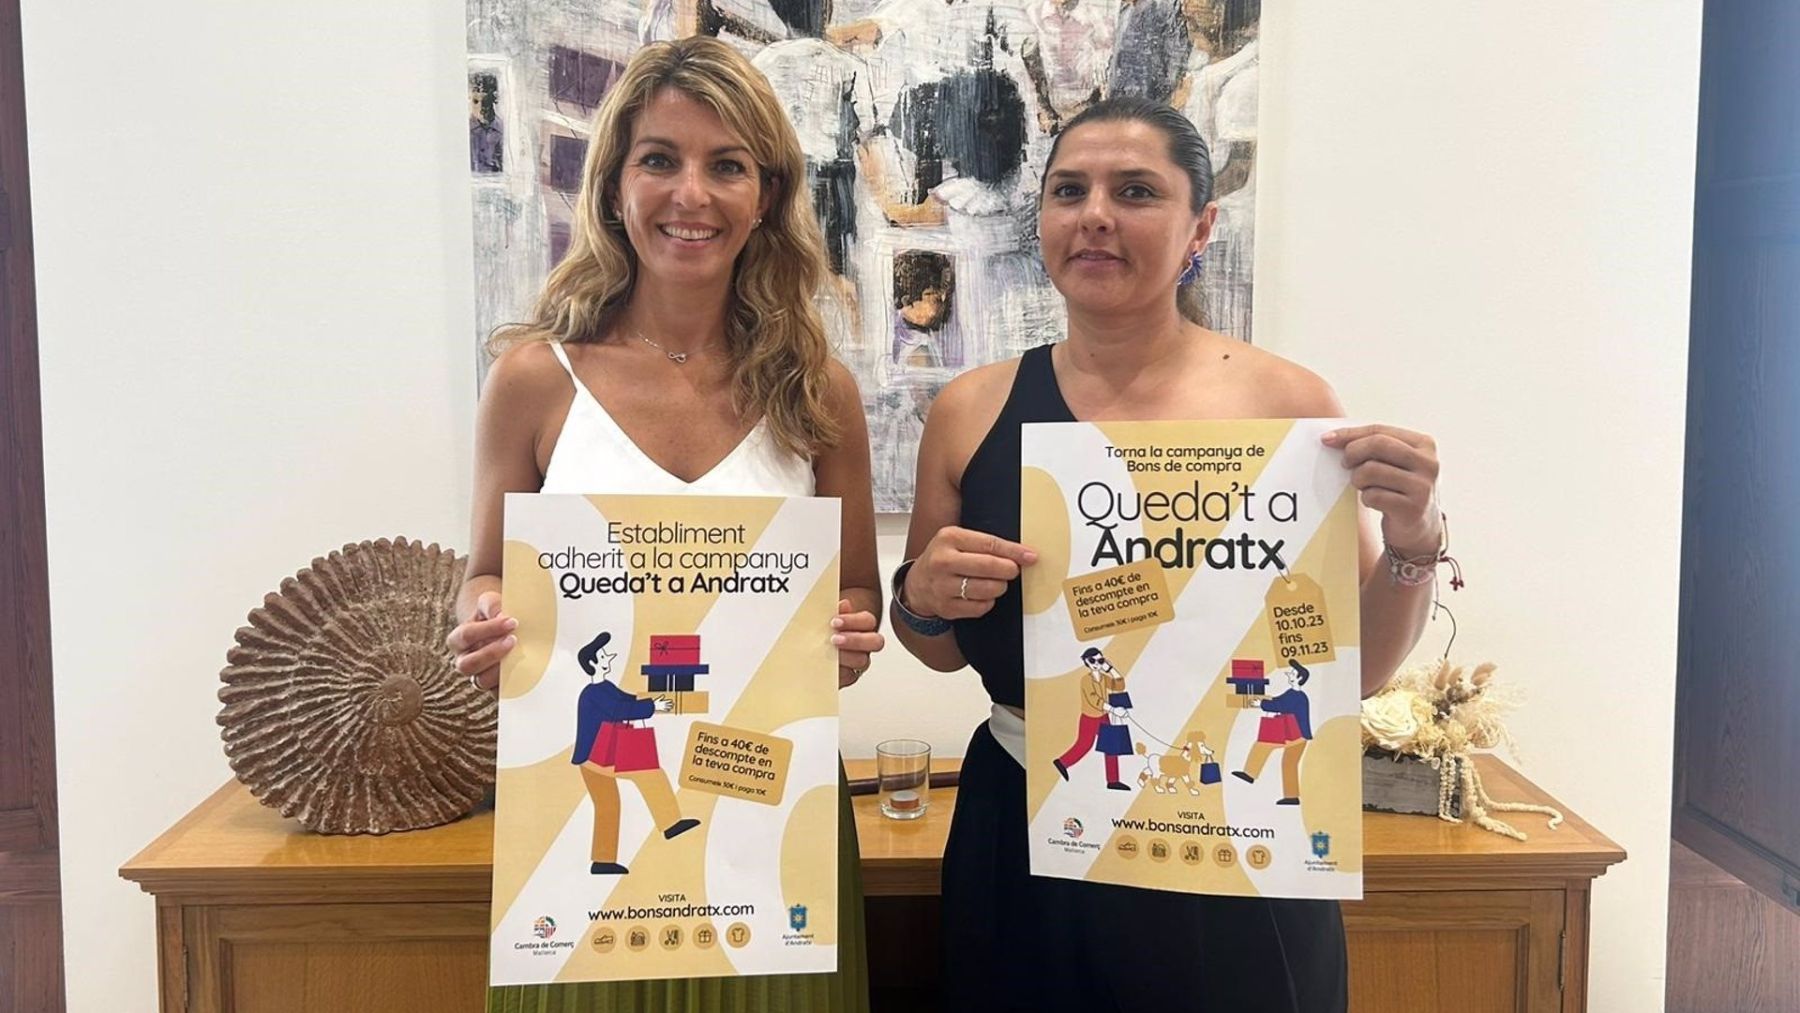 La alcaldesa de Andratx, Estefania Gonzalvo, junto a la regidora de Promoción Económica, Sandra Milena, con los carteles de la nueva edición de la campaña ‘Queda’t a Andratx’